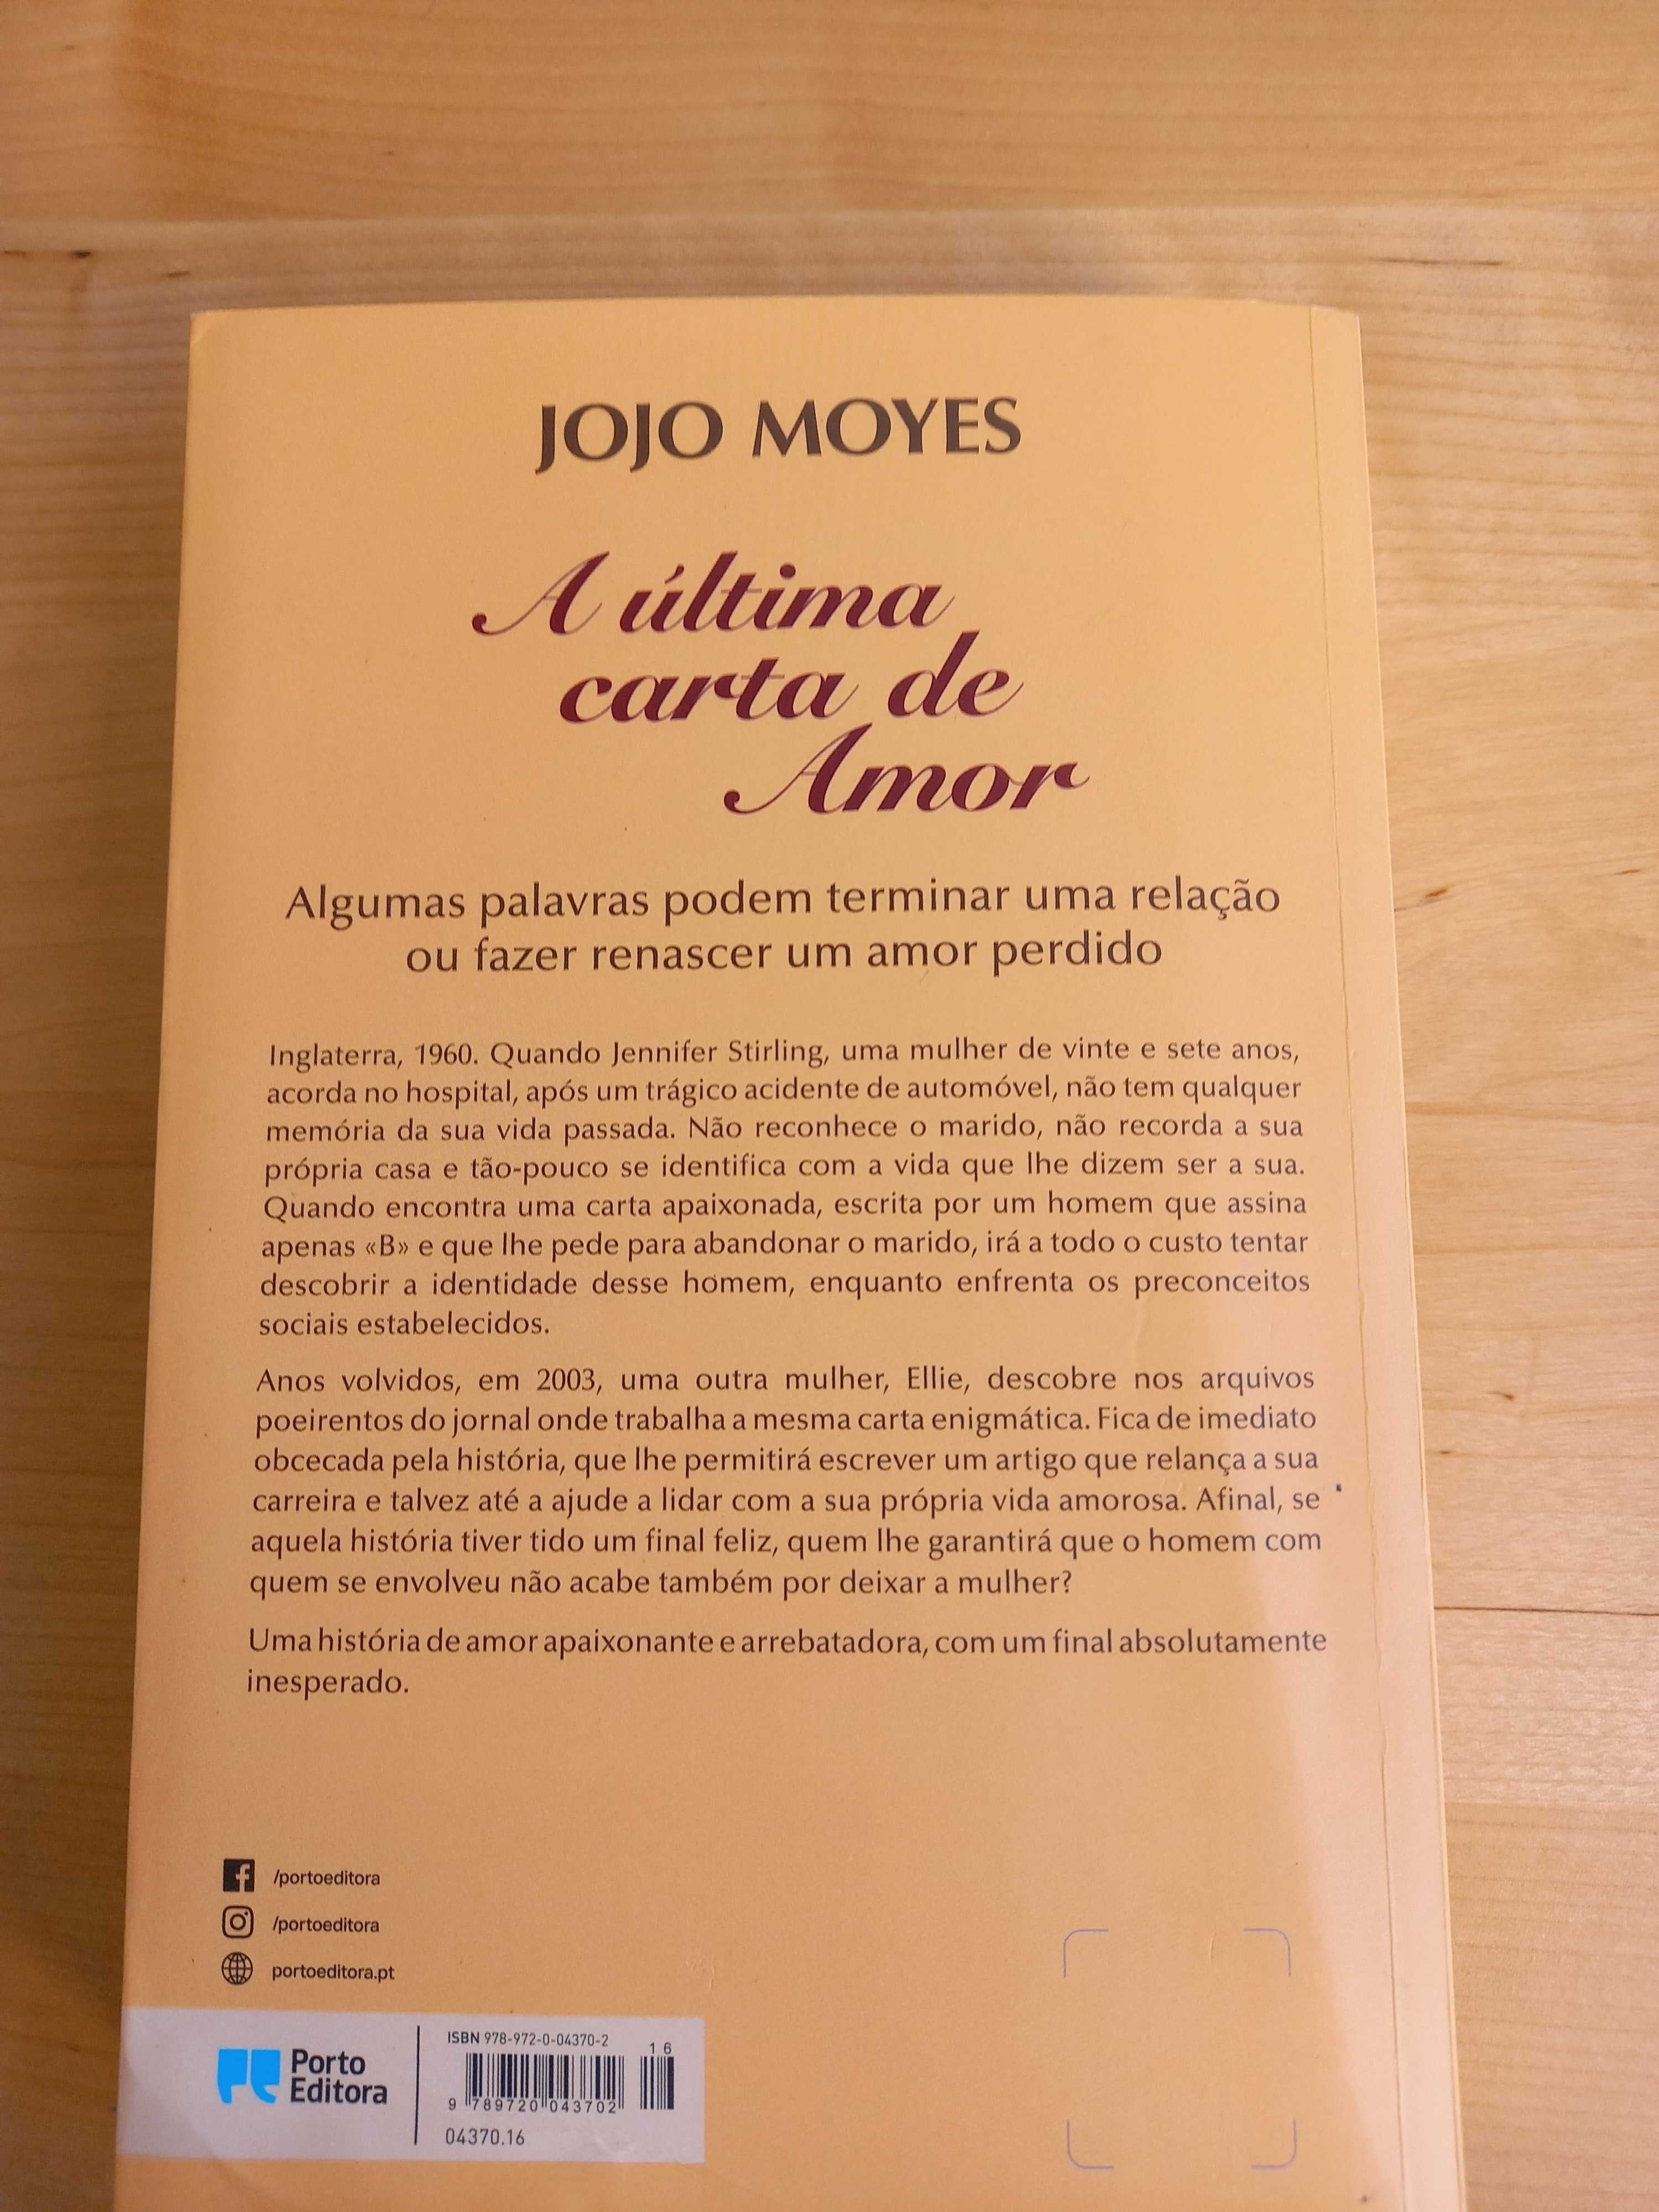 Livro "A última carta de Amor", de Jojo Moyes